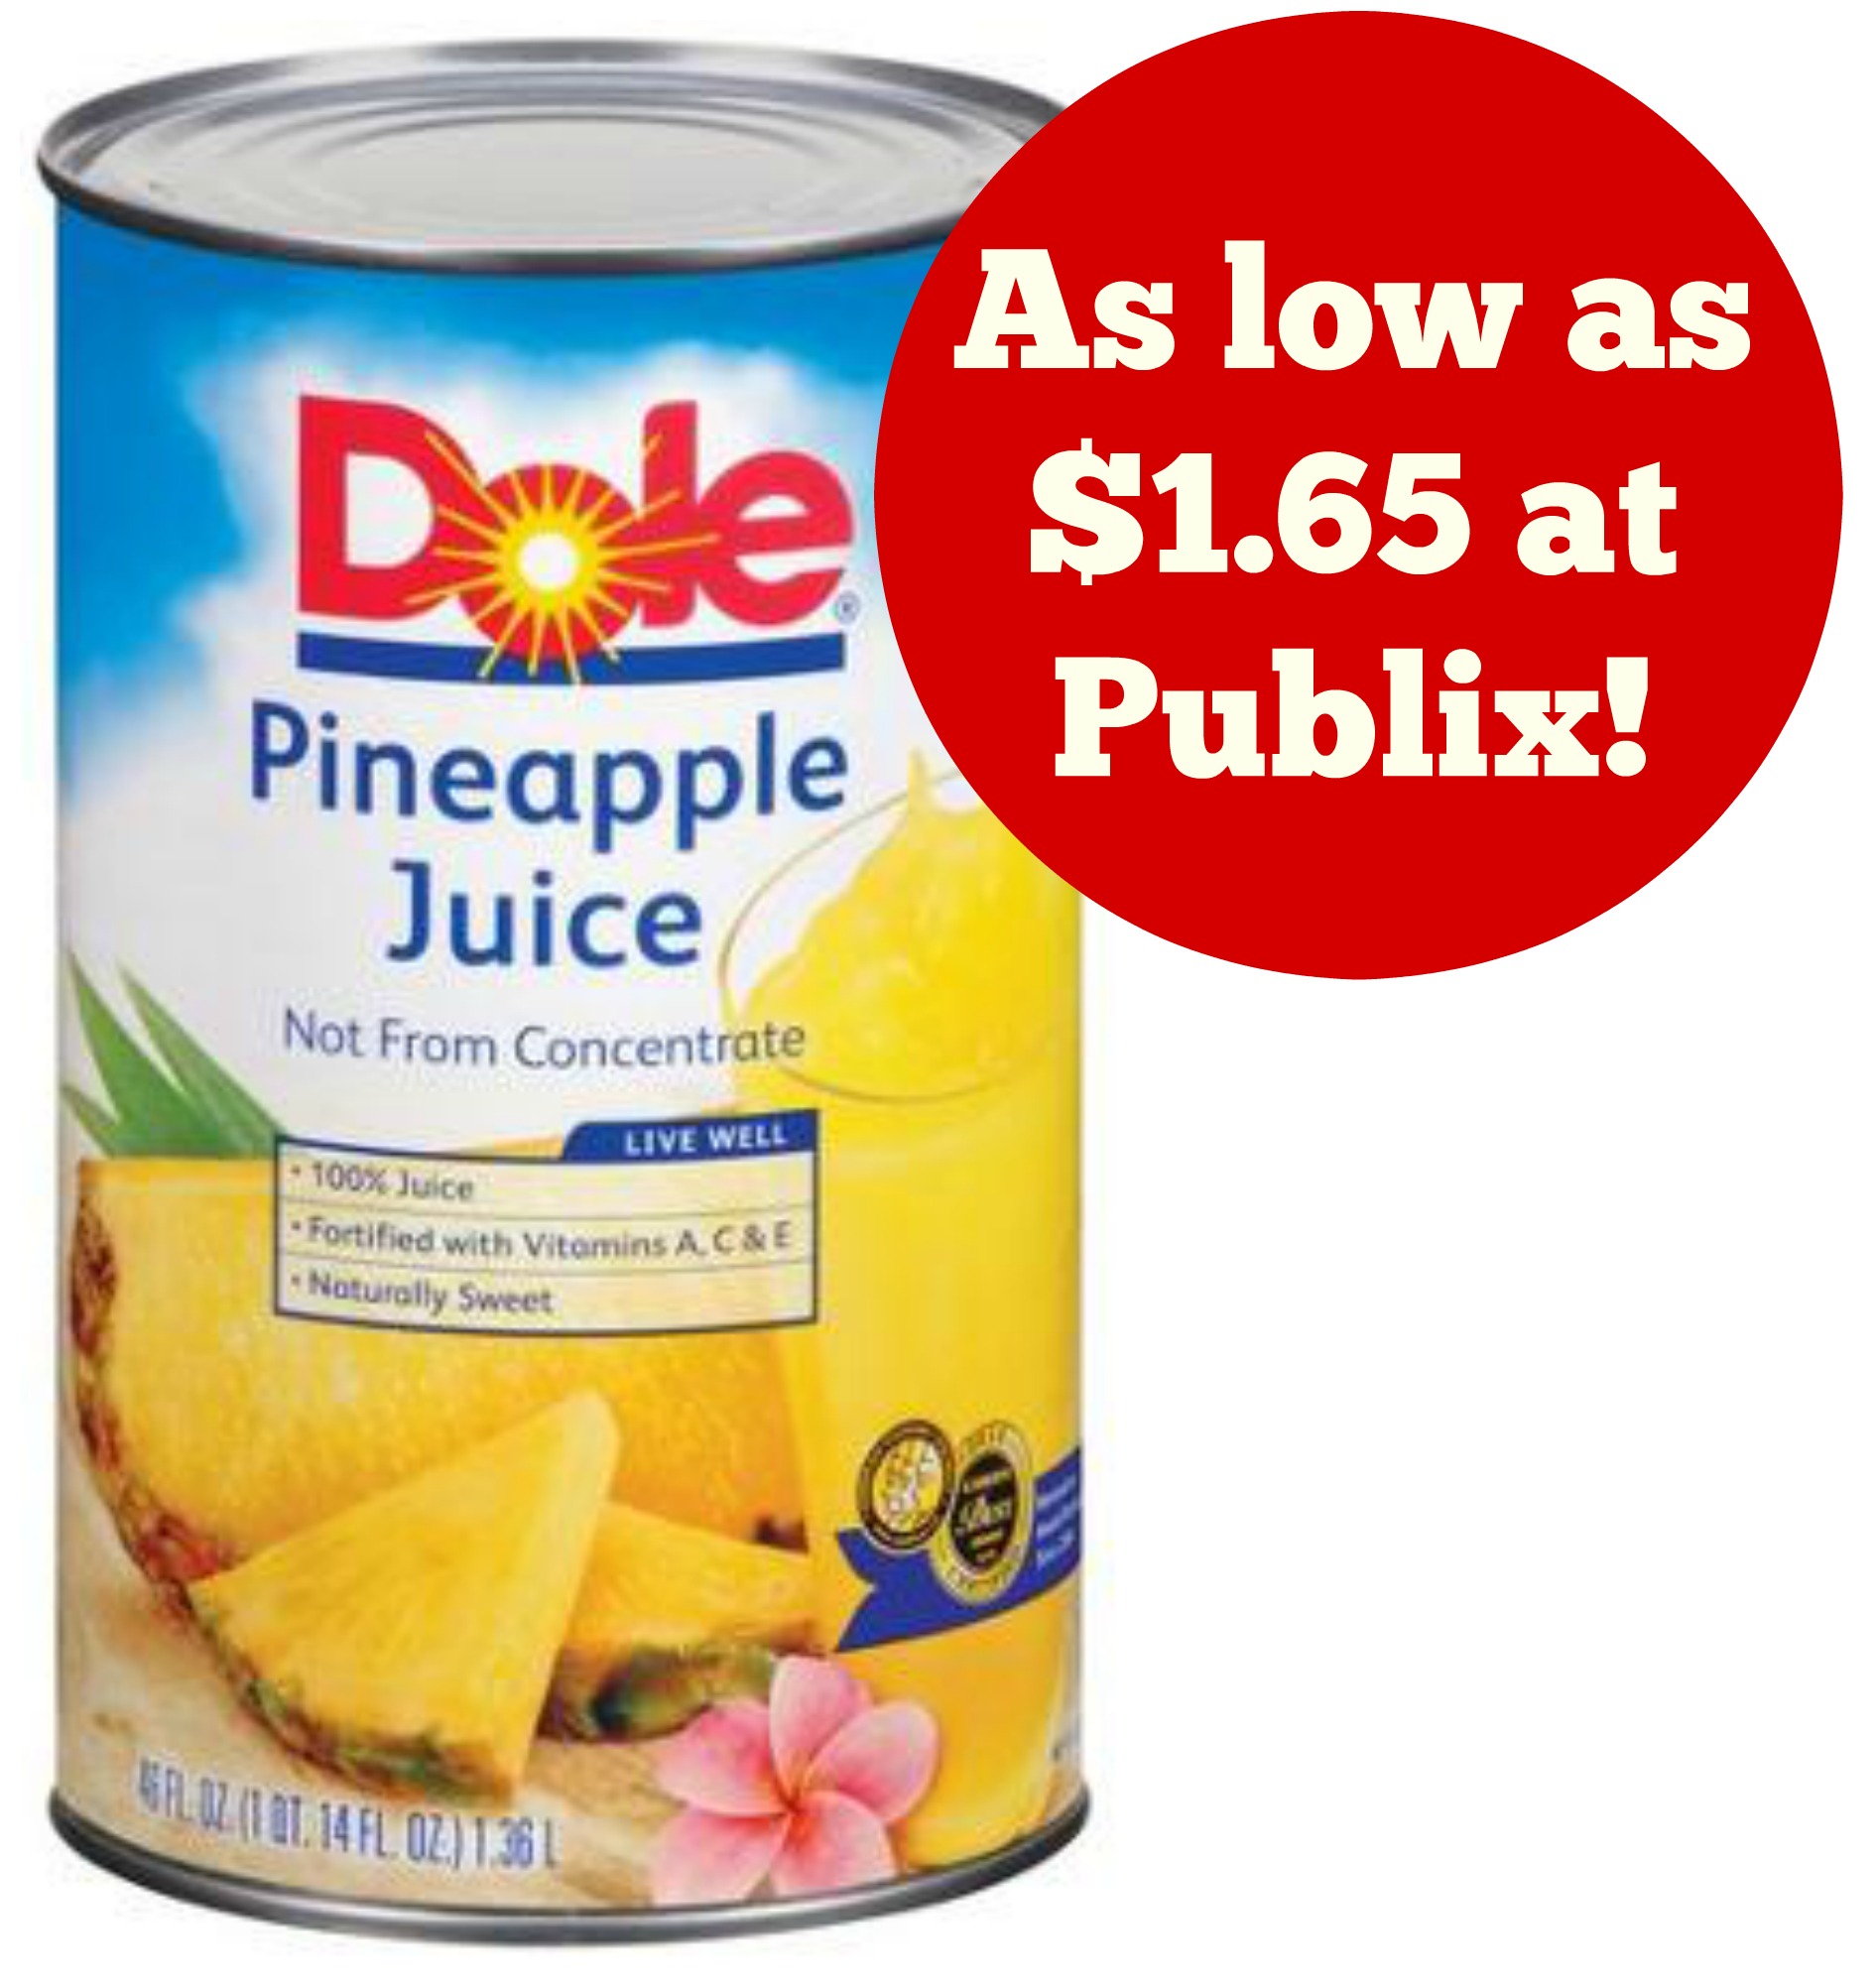 dole pineapple juice publix